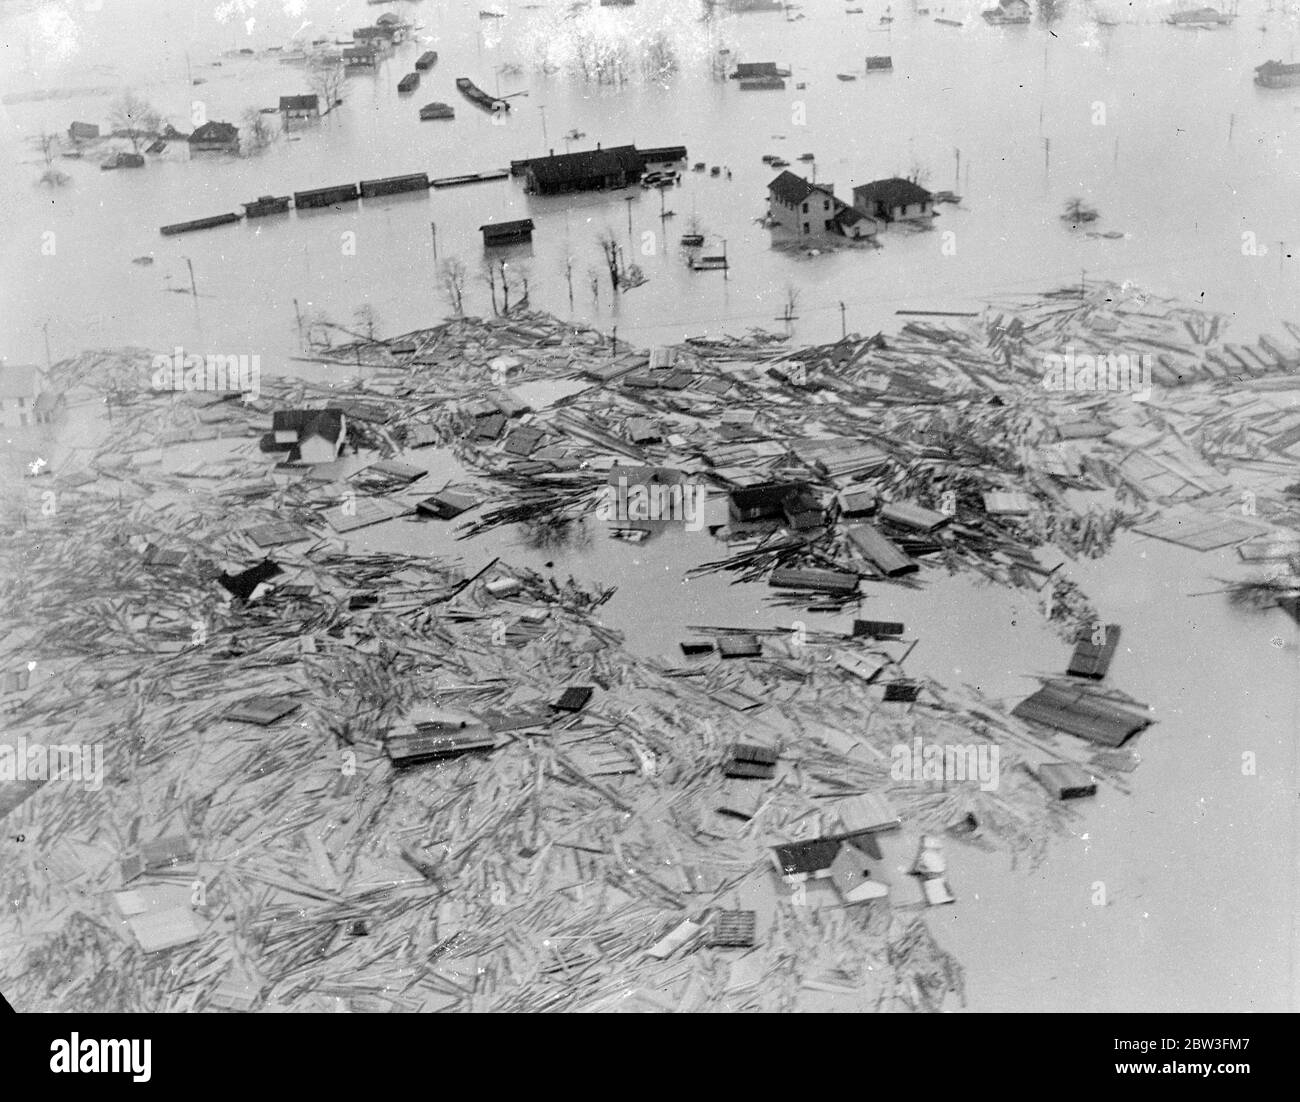 Zertrümmerte Gebäude schweben in Amerika auf Hochwassergewässern. Gebäude zerschlagen zu Matchholz schwebte wie Inseln auf dem Hochwasser in Old Town , Maryland , einer der Bereiche in den verheerenden Überschwemmungen, die den Tod von fast 200 Menschen verursacht haben und machte Tausende von Familien obdachlos in den östlichen Staaten von Amerika . Foto zeigt, Trümmer von zertrümmerten Gebäuden schwimmend auf dem Hochwasser in der Altstadt, Maryland. 25 März 1936 Stockfoto